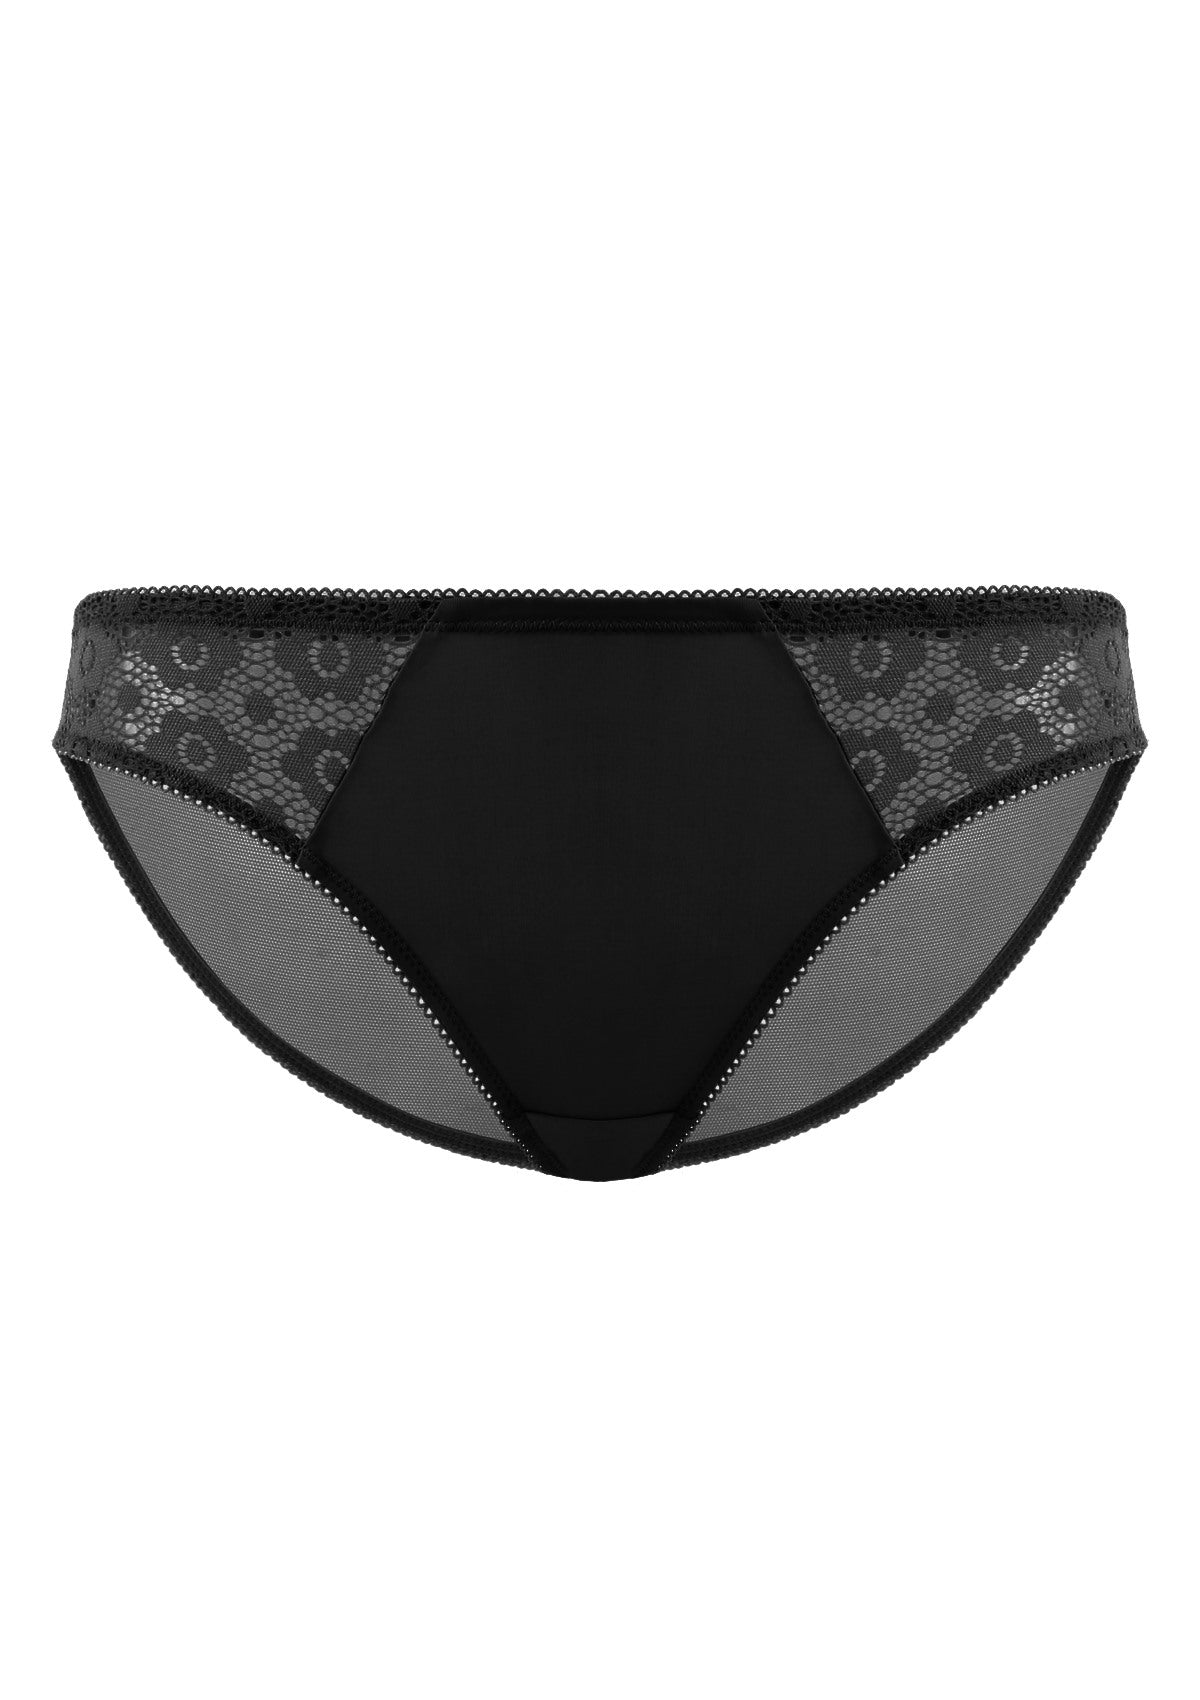 HSIA Serena Comfortable Trendy Lace Trim Bikini Underwear - L / Black